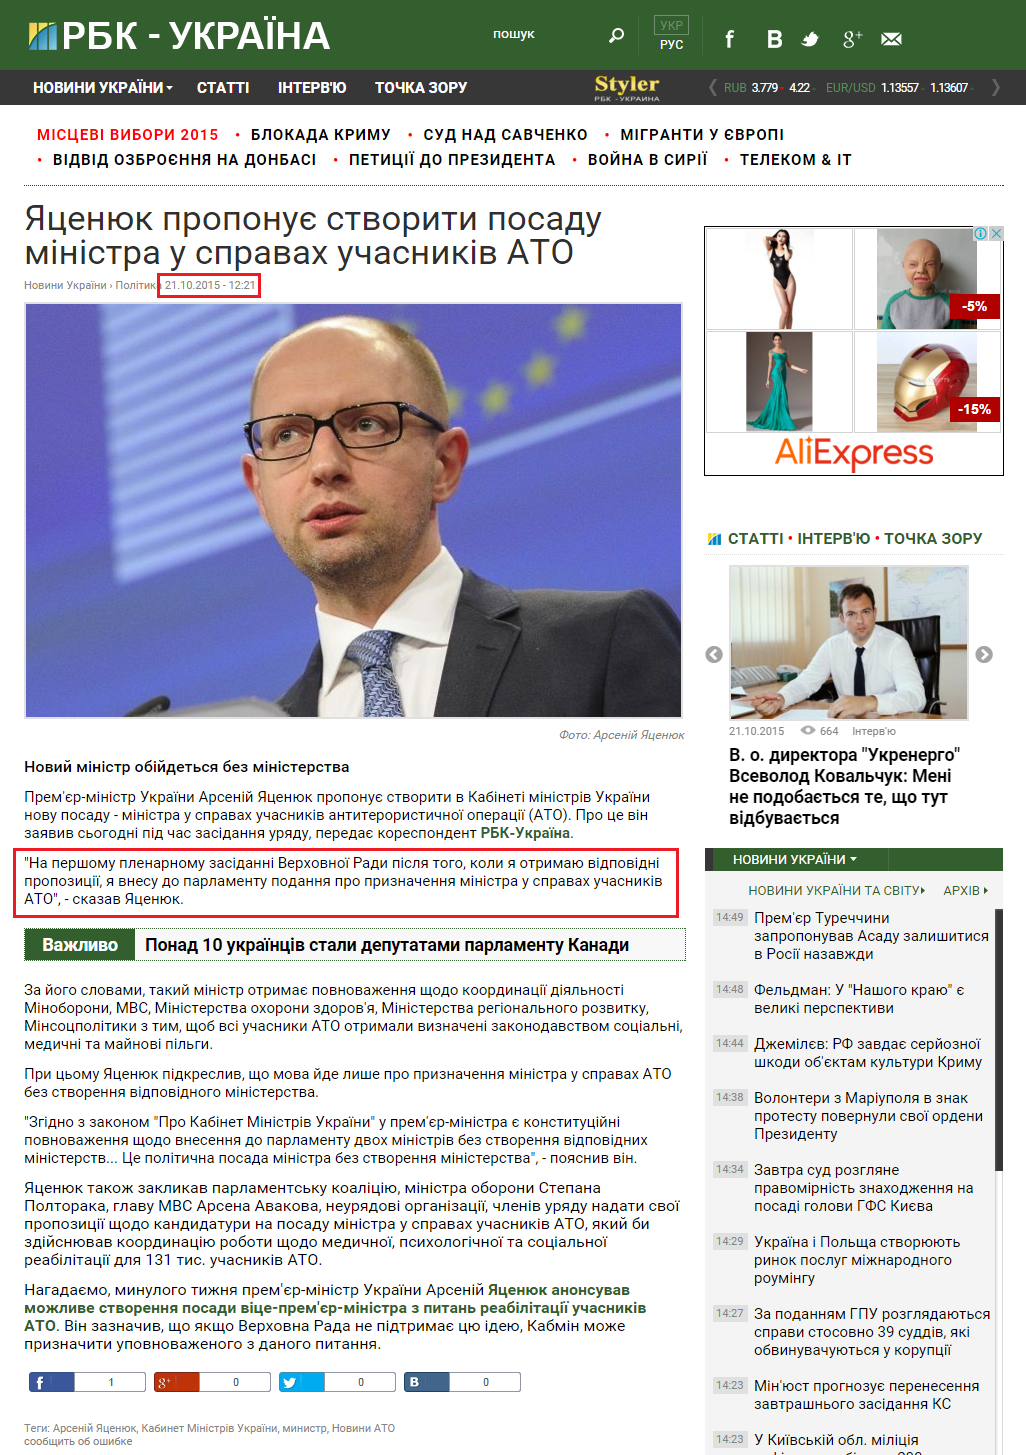 http://www.rbc.ua/ukr/news/tsenyuk-predlagaet-sozdat-dolzhnost-ministra-1445419292.html